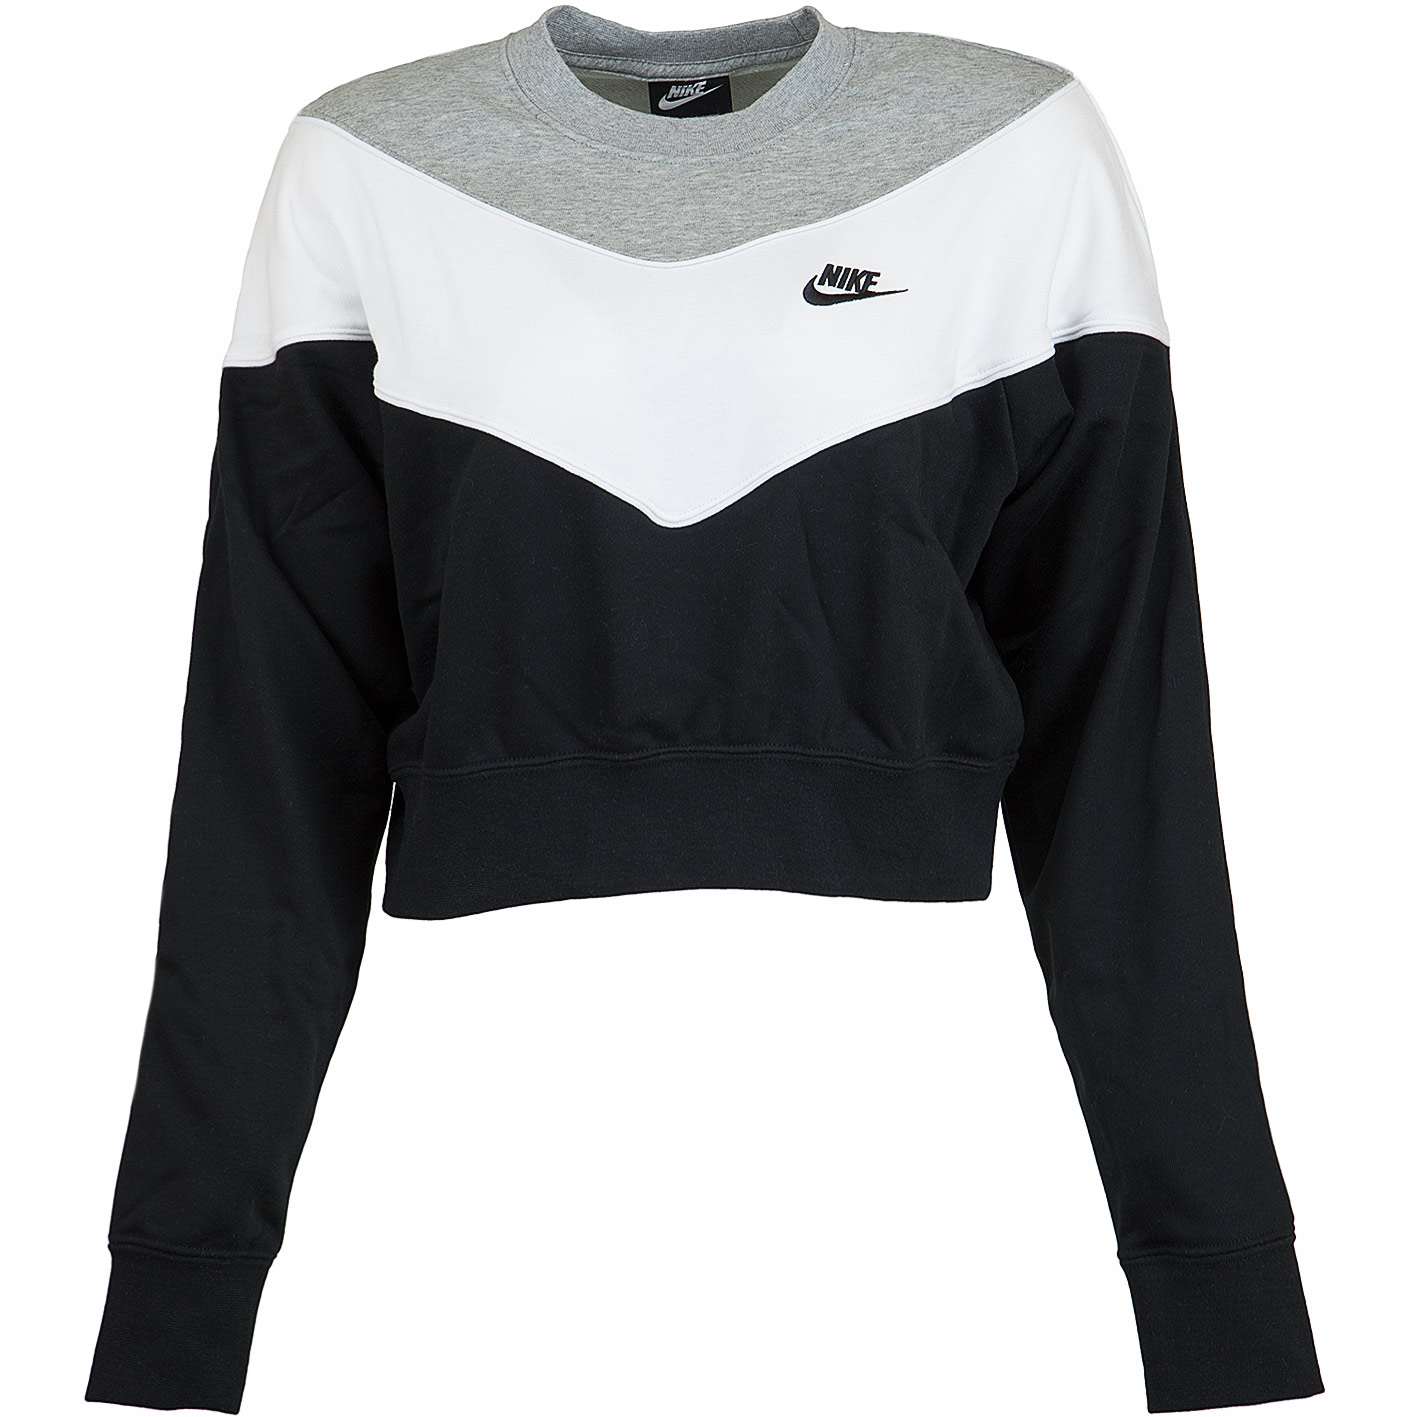 ☆ Nike Damen Sweatshirt Heritage schwarz/weiß/grau - hier bestellen!